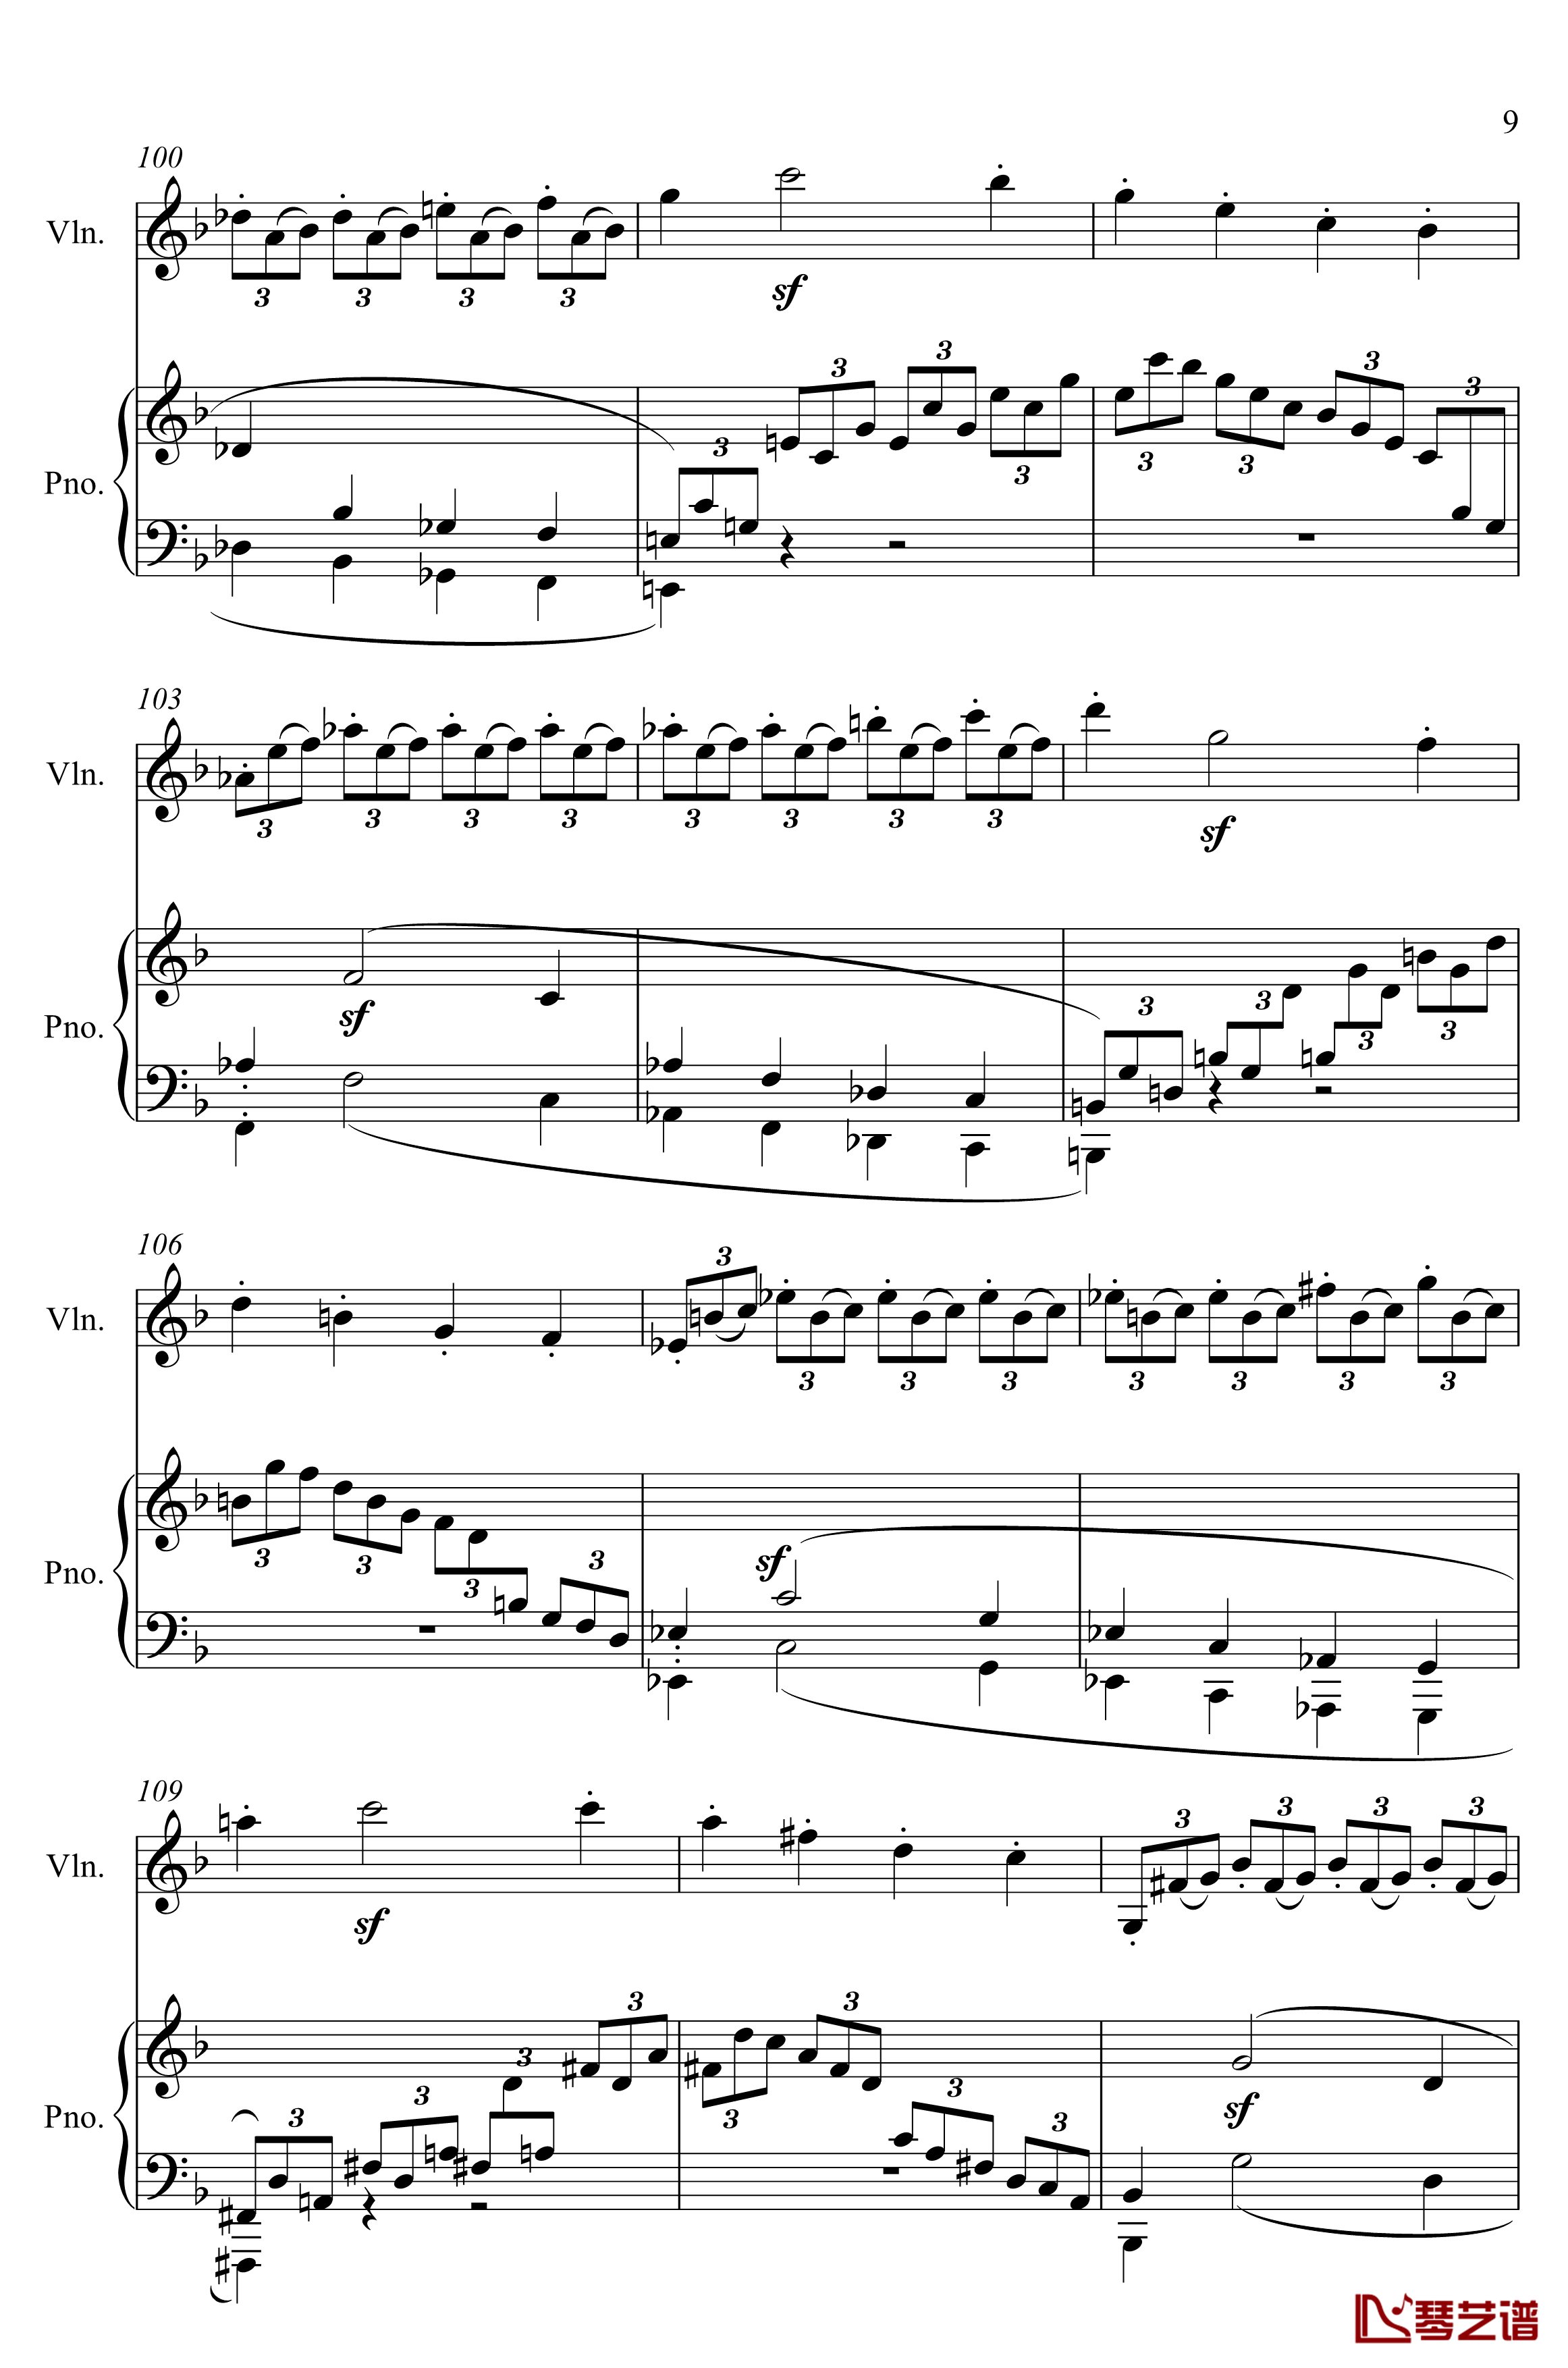 第5小提琴与钢琴奏鸣曲钢琴谱-第一乐章钢琴谱-贝多芬-beethoven9